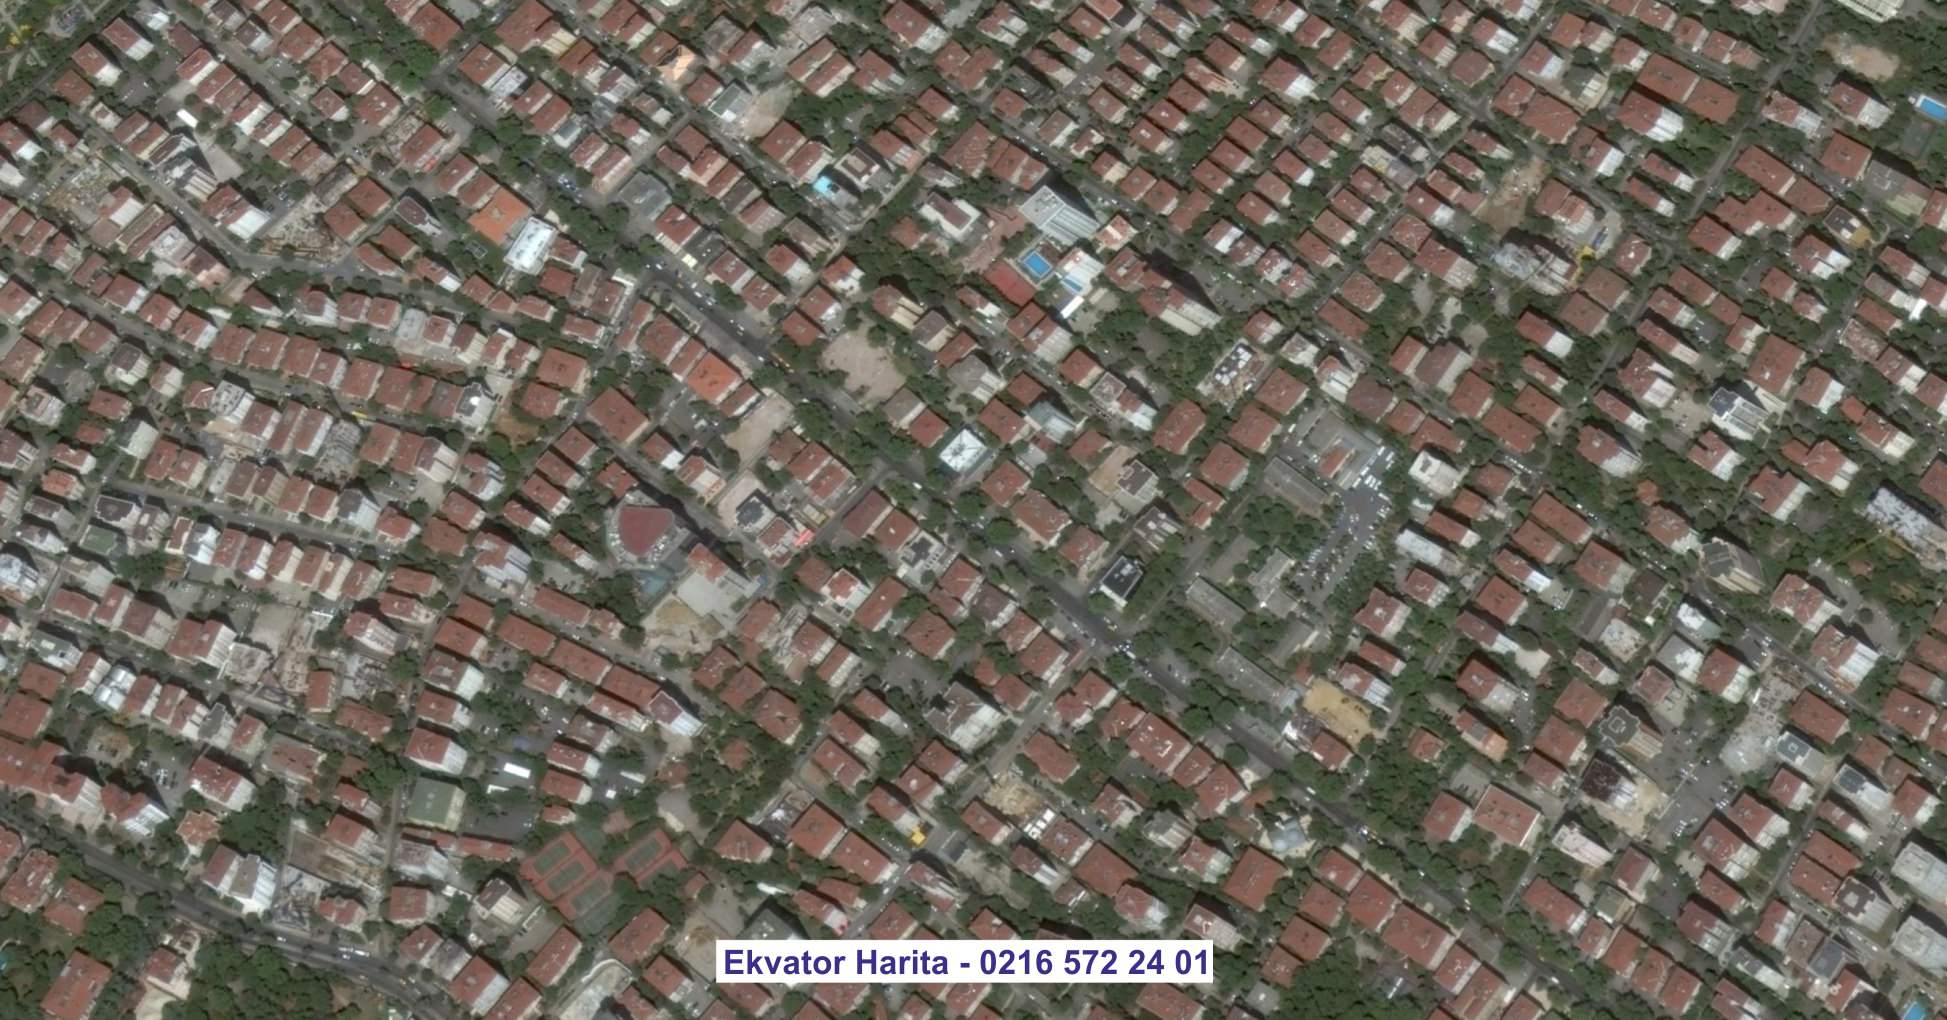 Ataşehir Uydu Görüntüsü Örnek Fotoğrafı